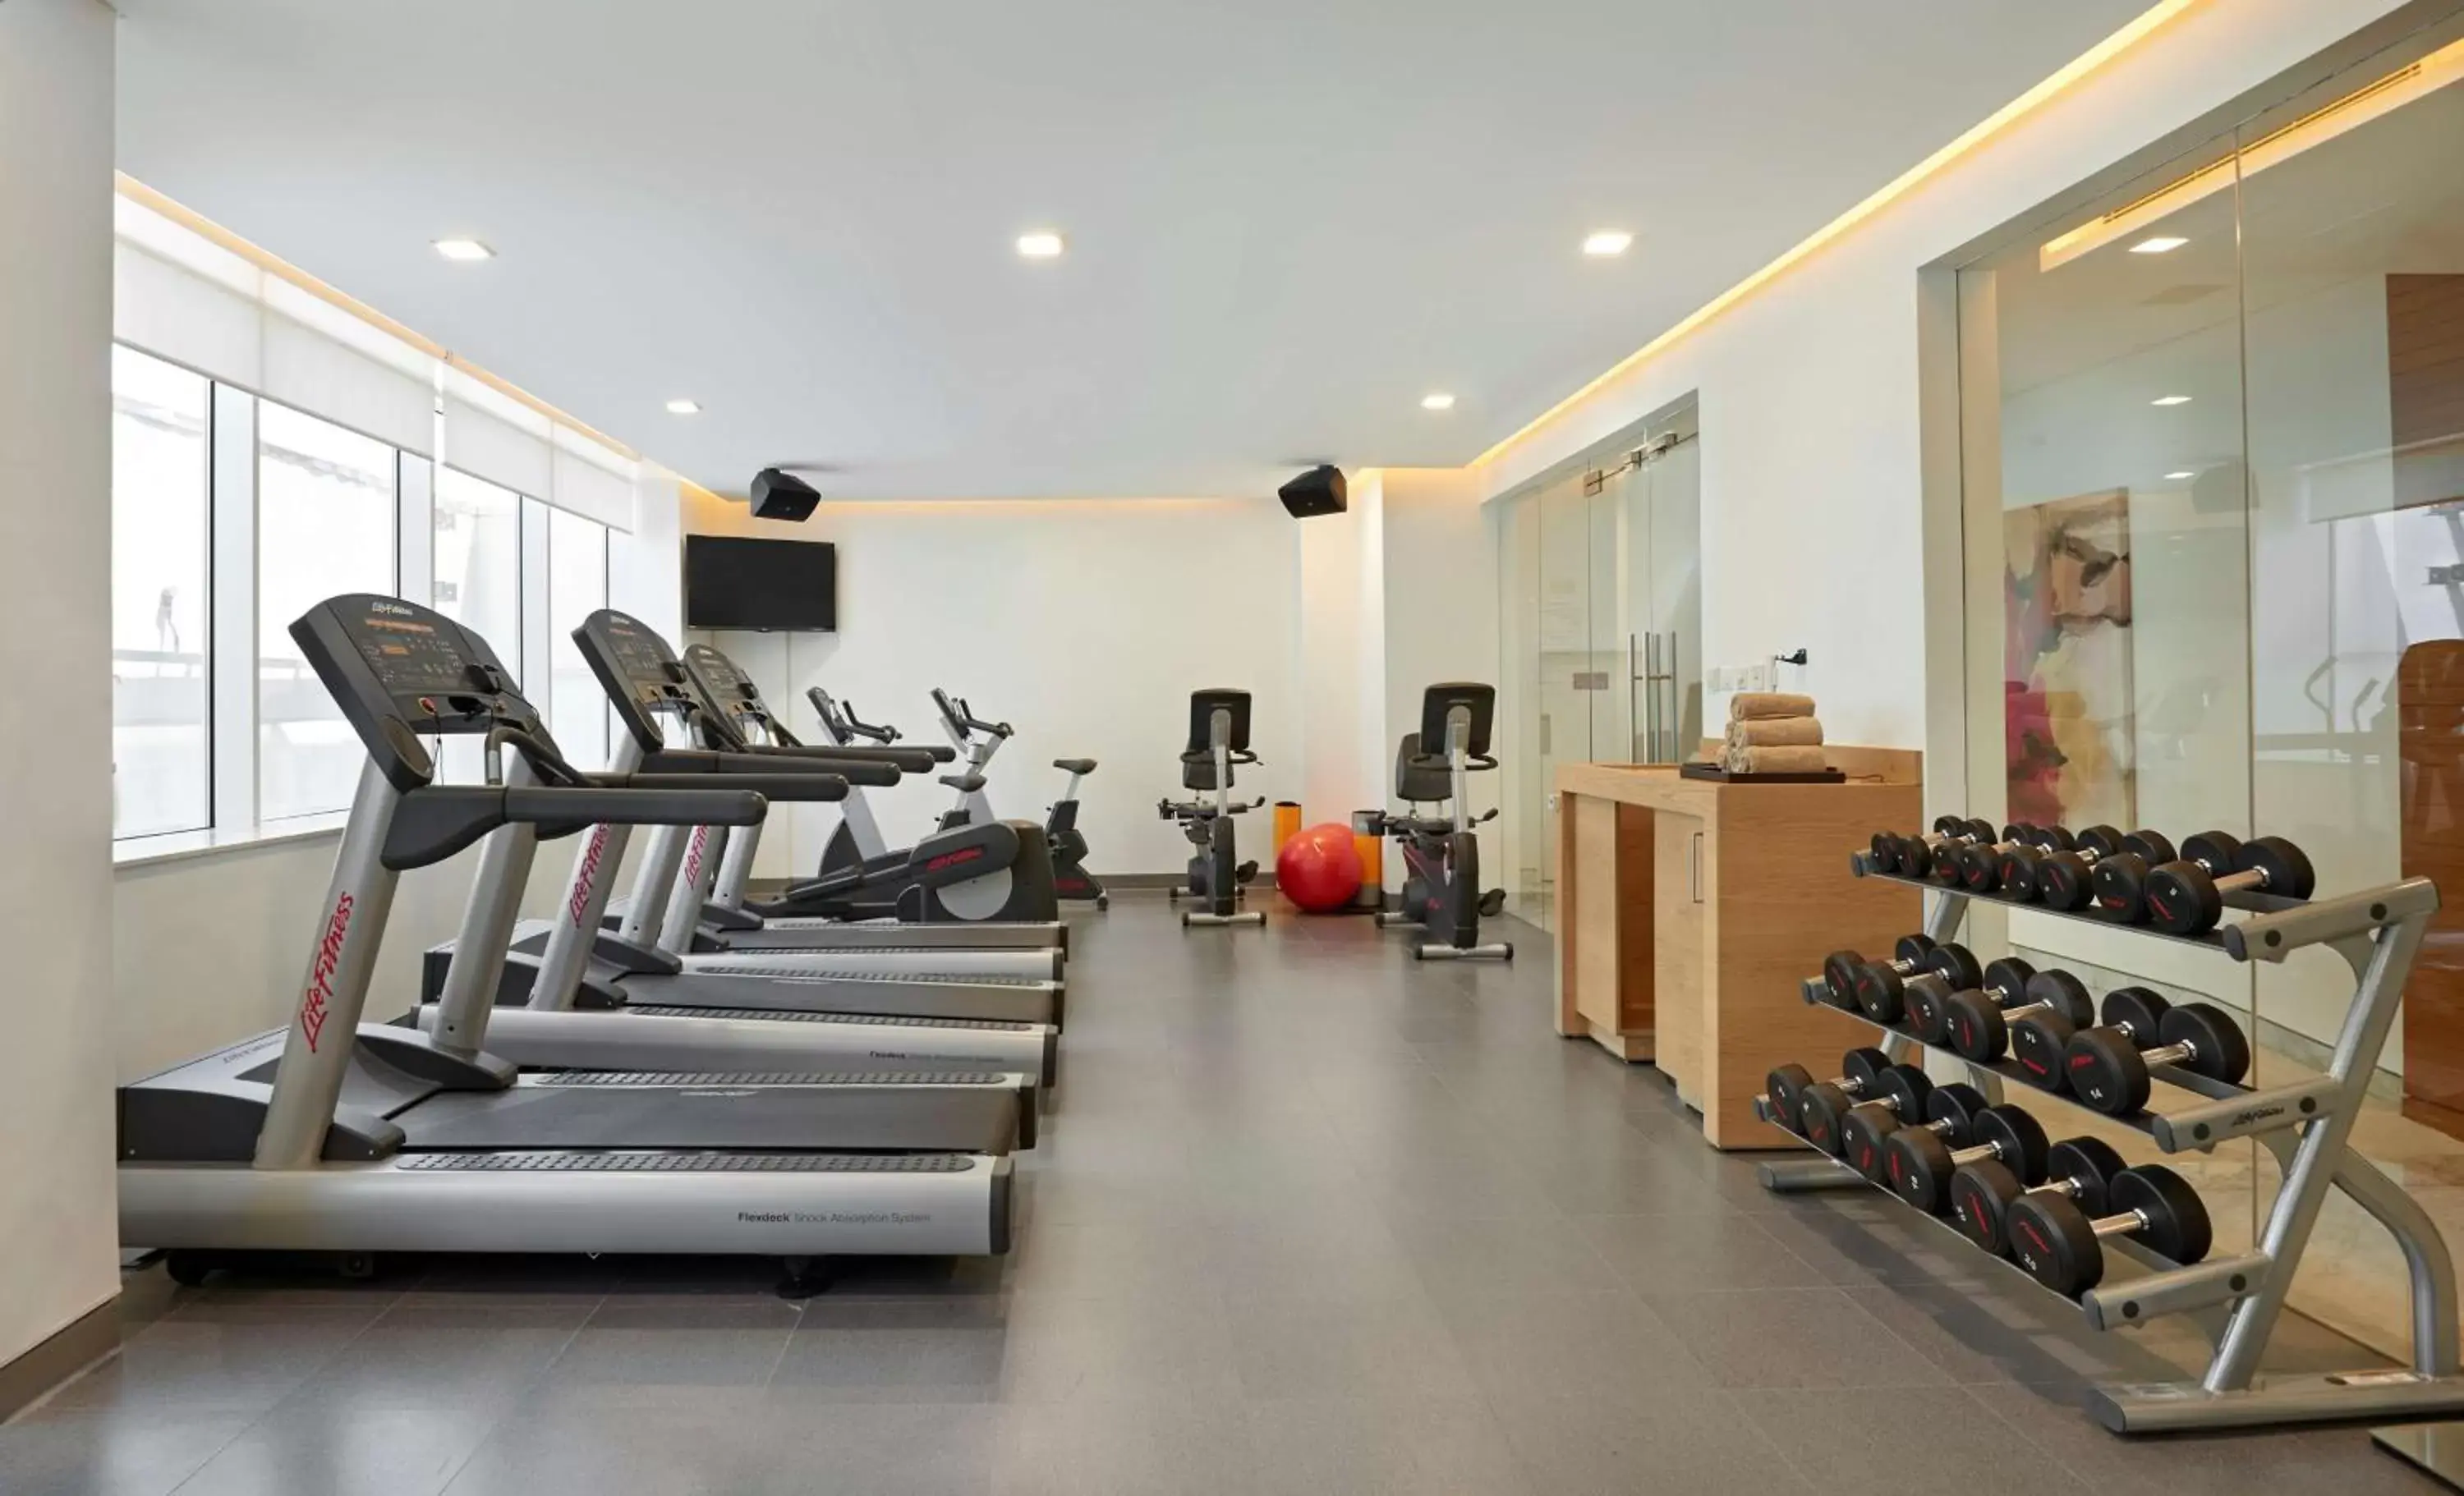 Fitness centre/facilities, Fitness Center/Facilities in Hyatt Place Dubai Baniyas Square